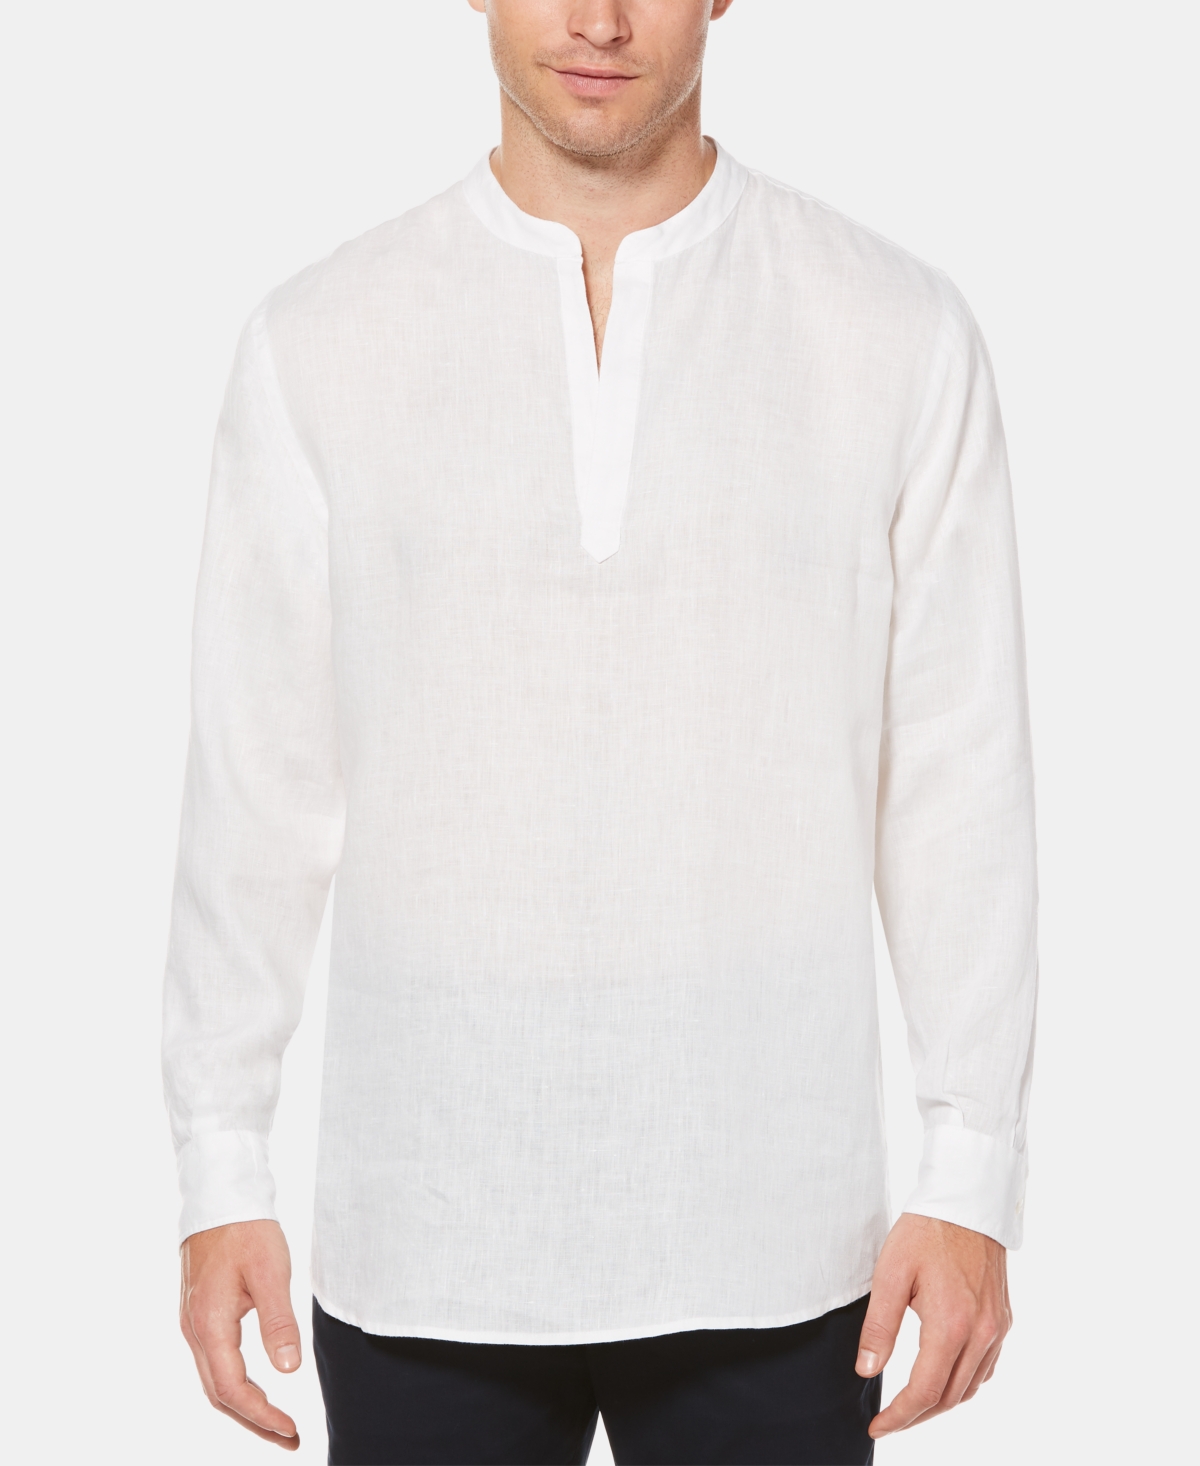 Men's Solid Linen Popover Long Sleeve Shirt - Bright White